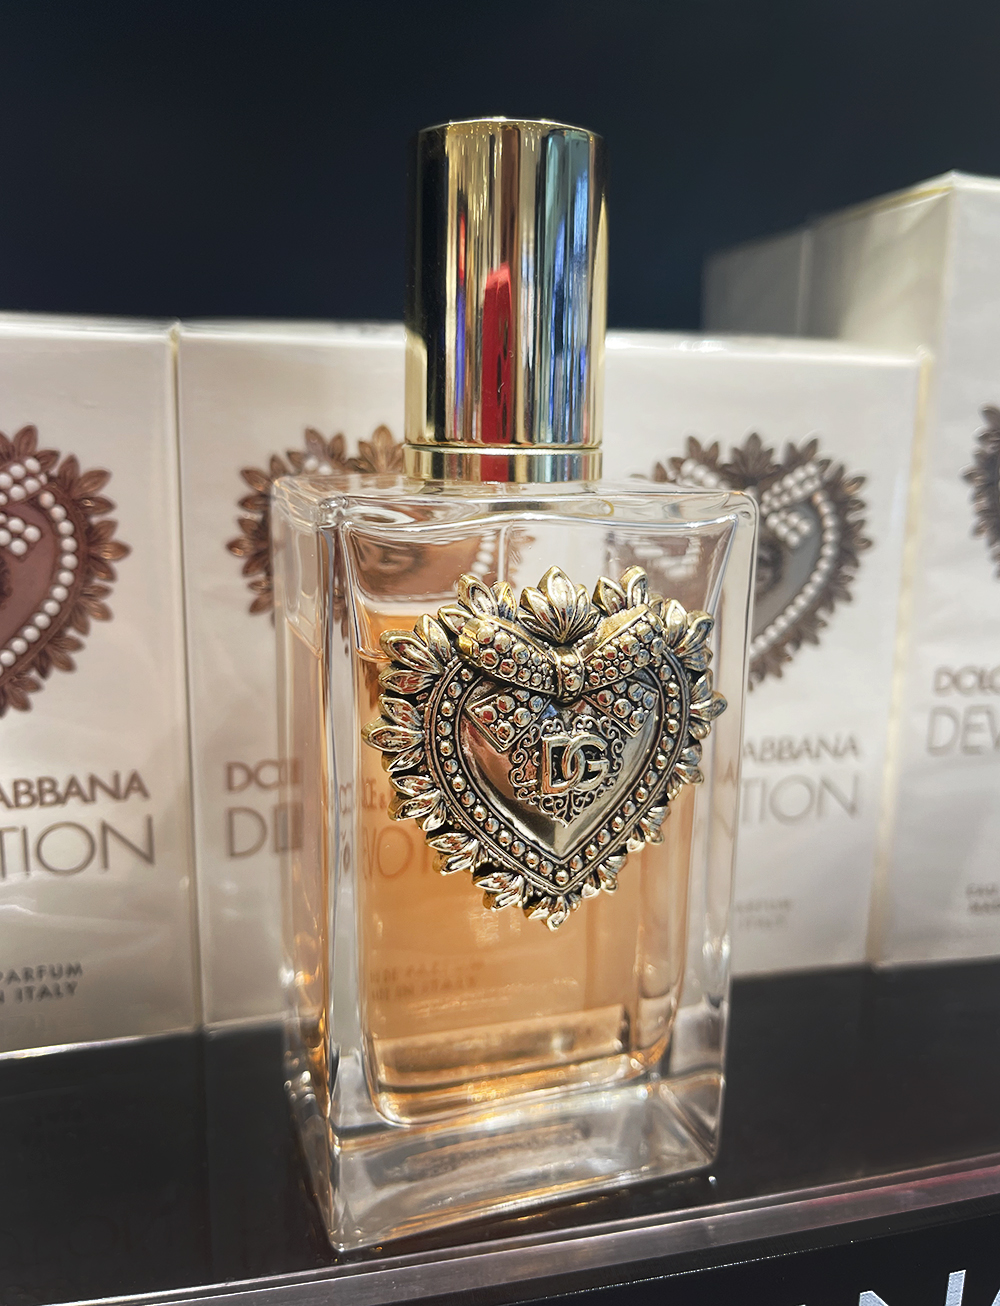 Dolce & Gabbana Devotion Eau de Parfum ~ Novas fragrâncias